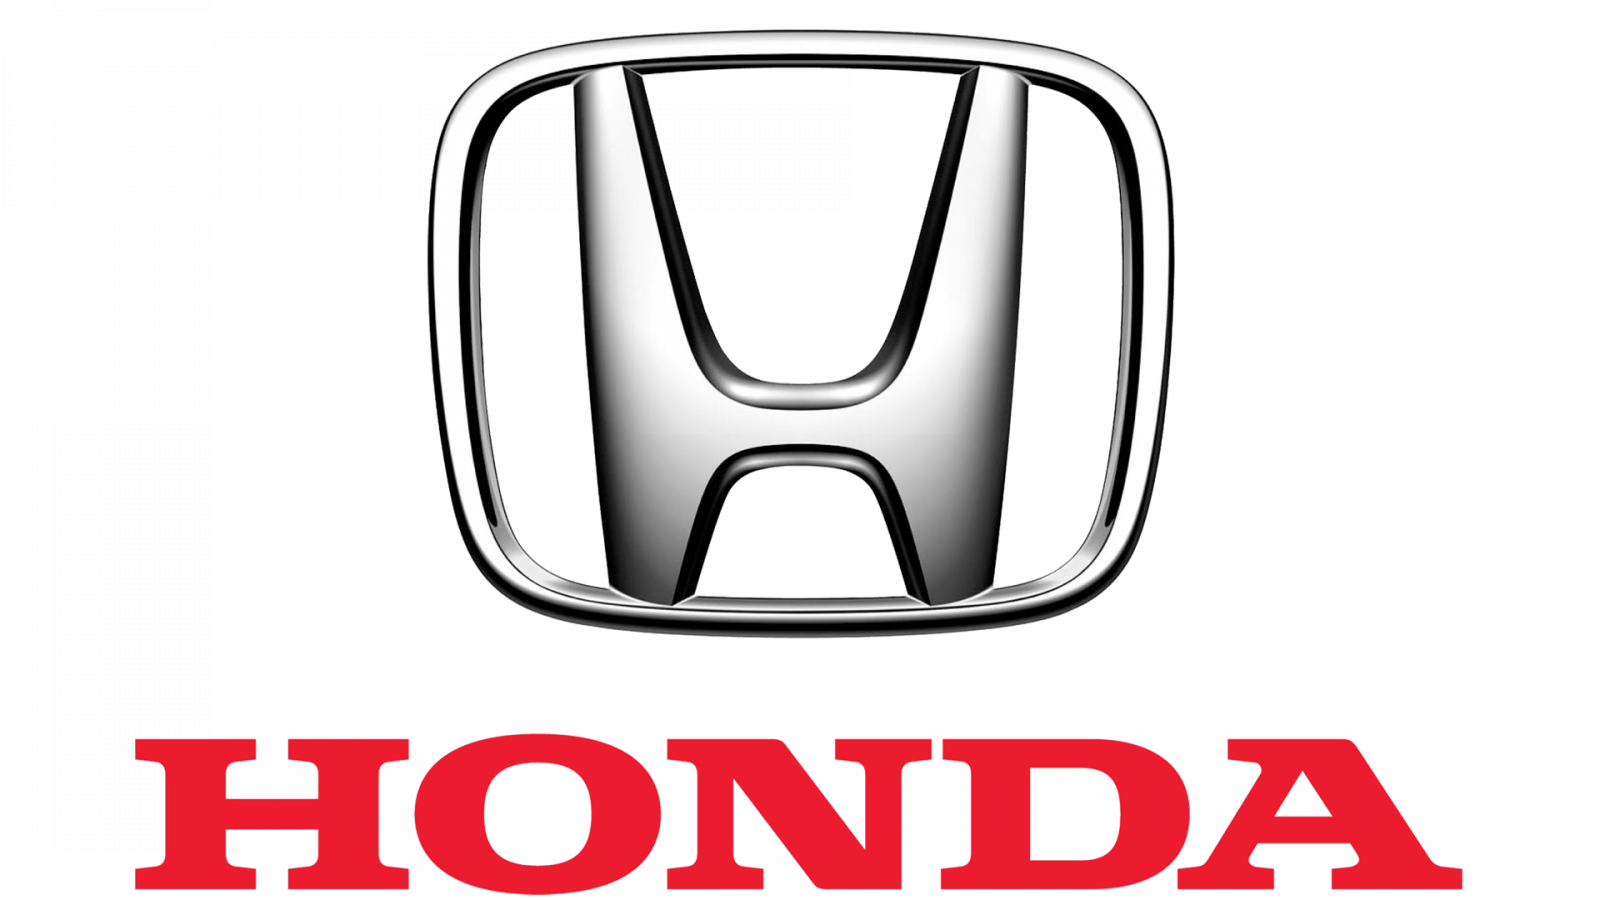 Hãng xe Honda